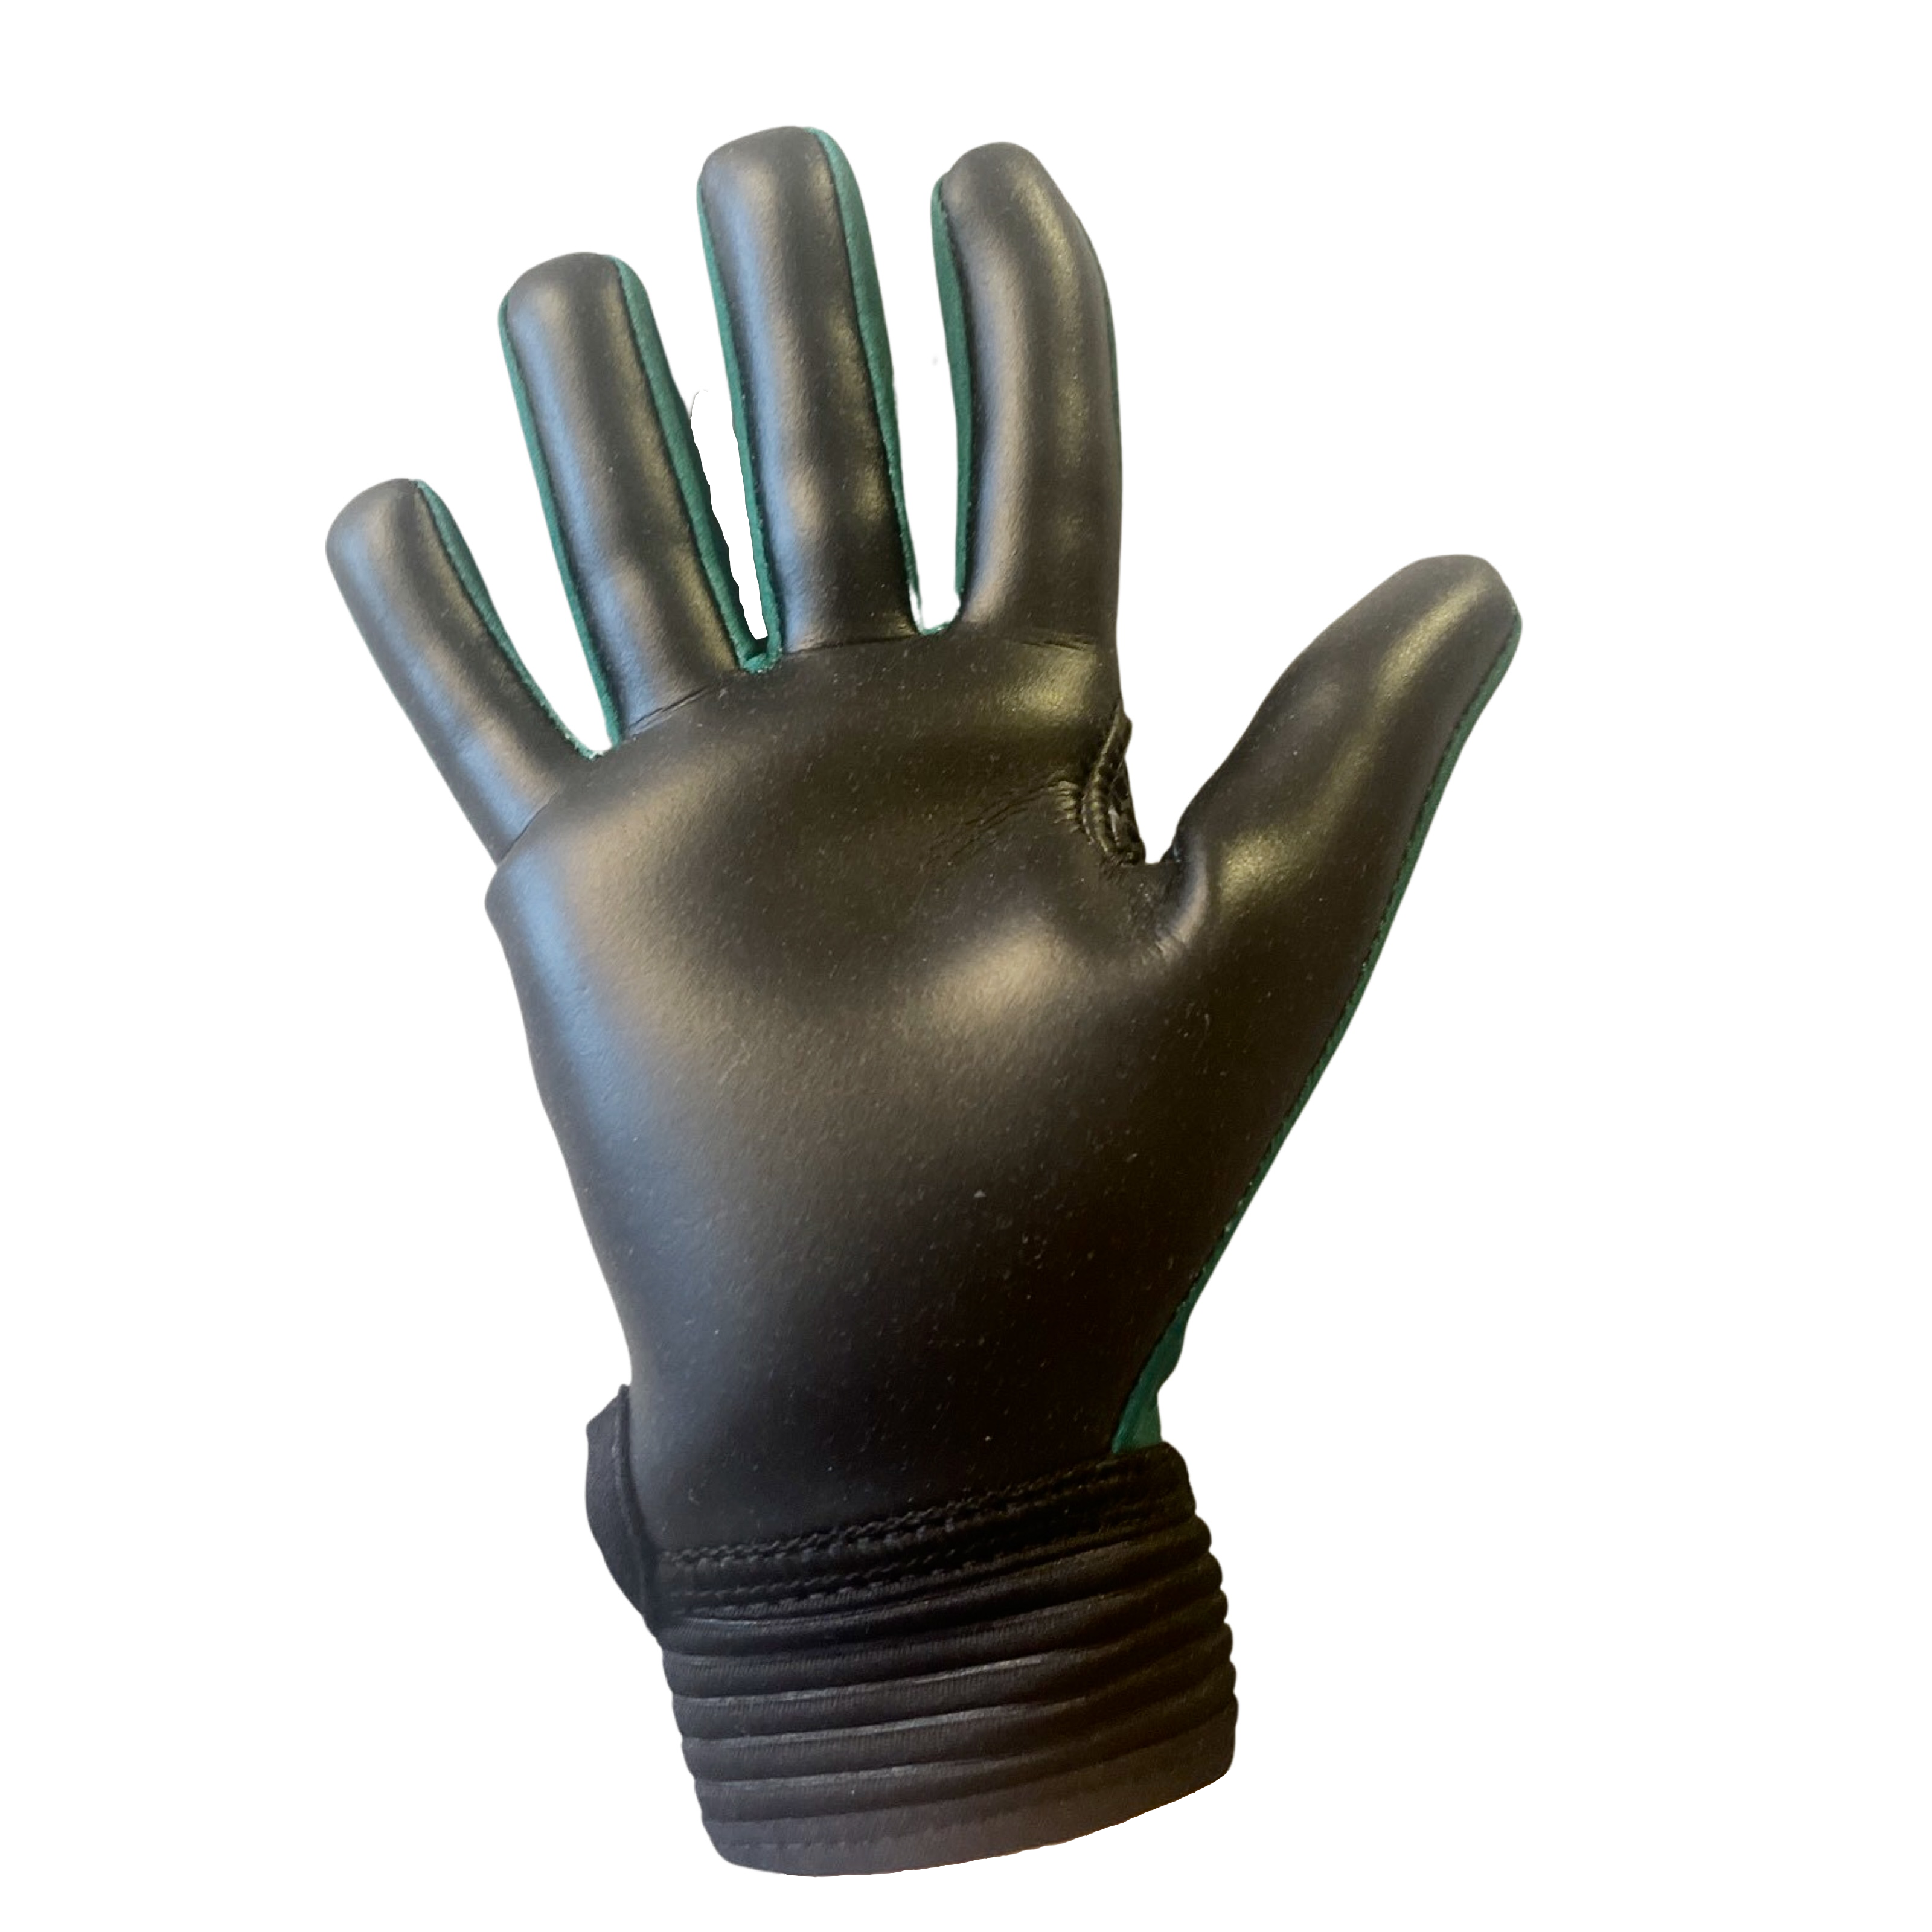 Contest Junior Gaelic Glove